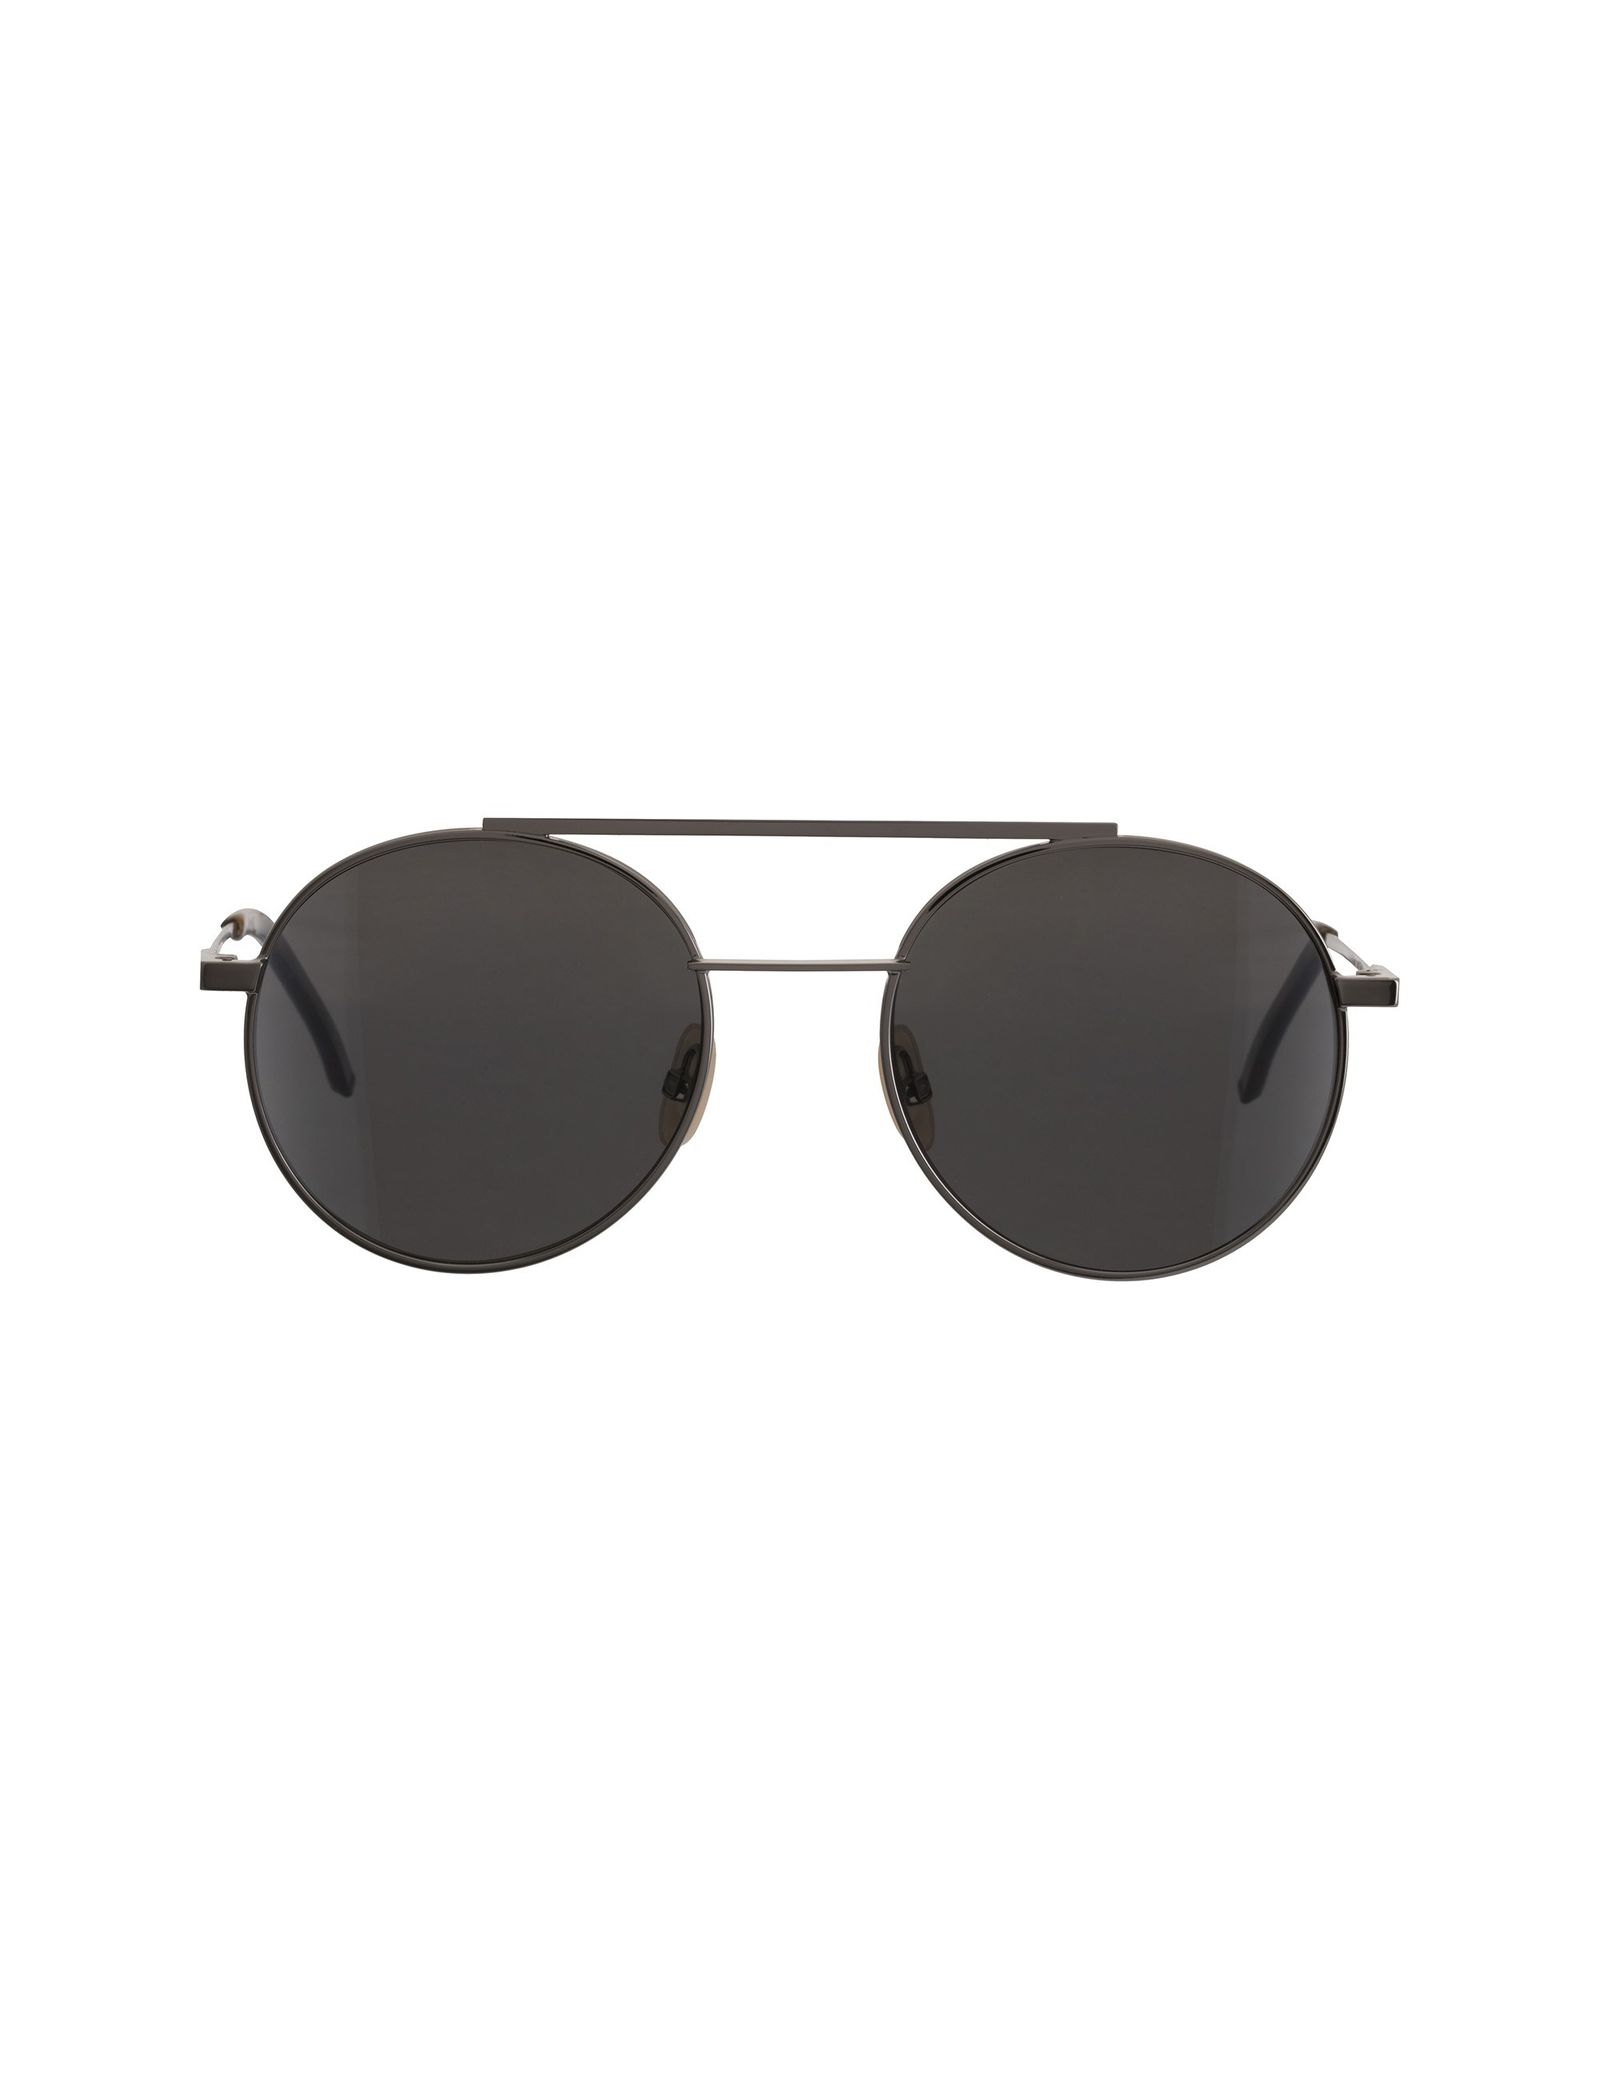 عینک آفتابی خلبانی مردانه - فندی - نقره اي - 1